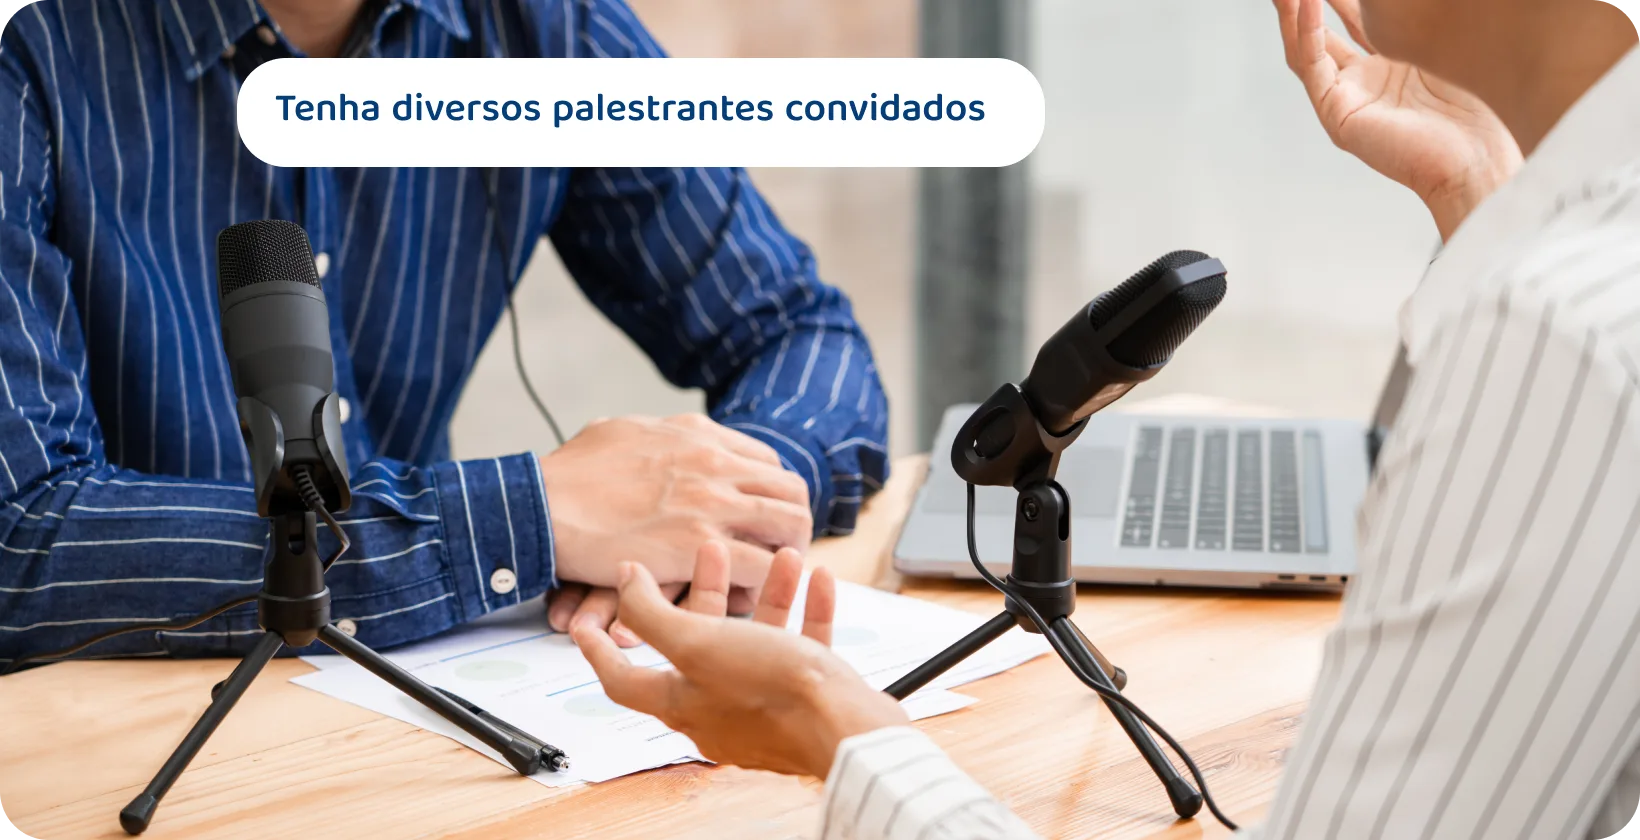 Dois podcasters com microfones discutindo podem ser as dicas de conteúdo para sessões de palestrantes convidados envolventes e diversificadas.